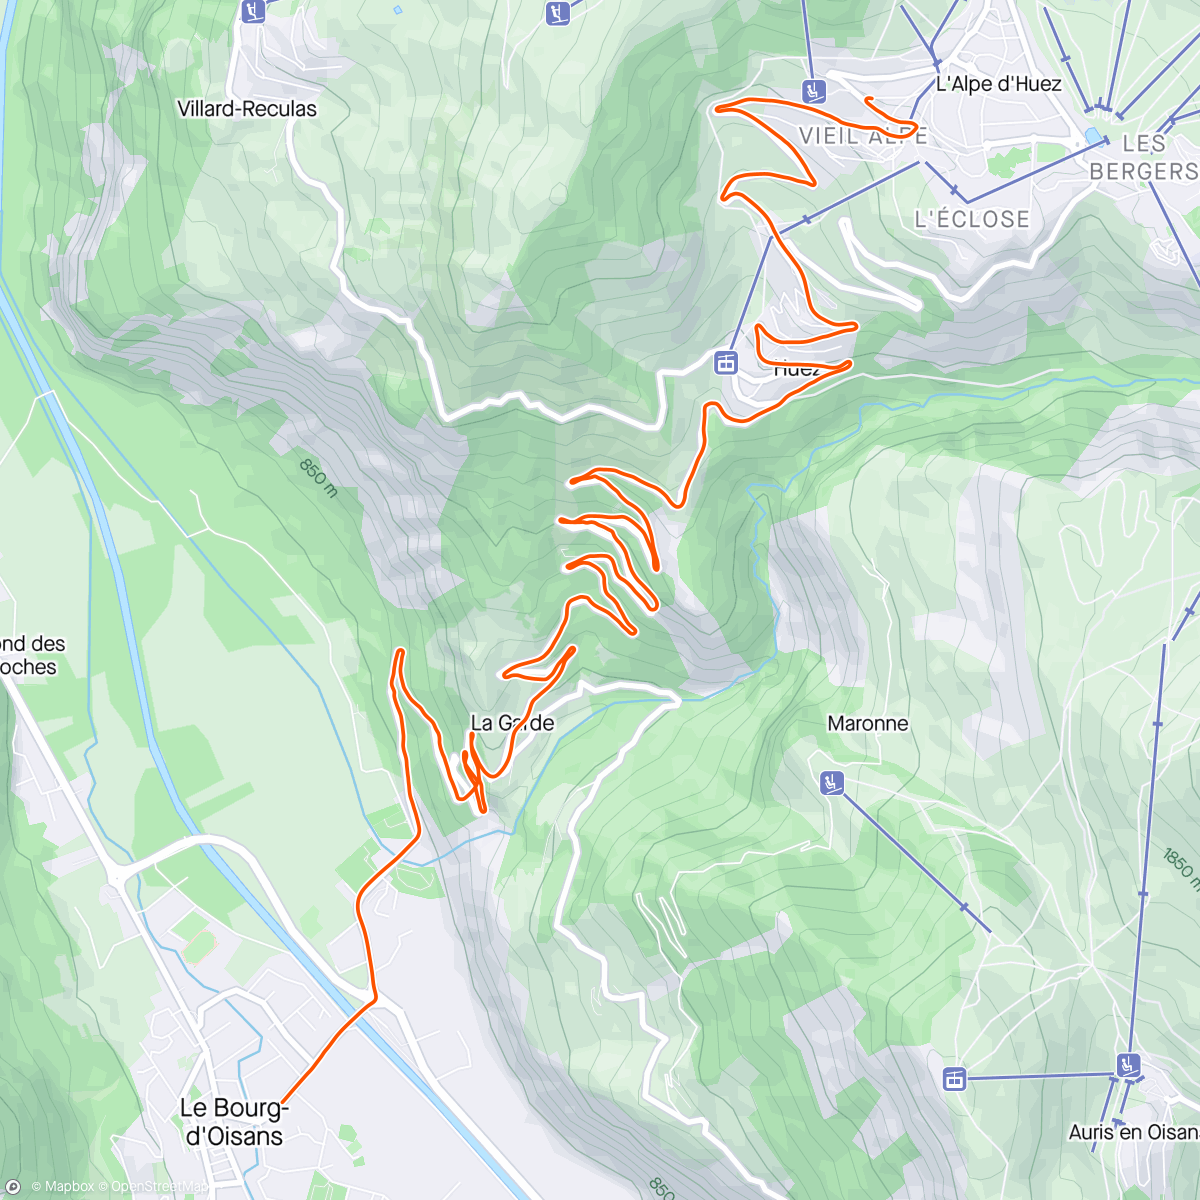 「ROUVY - Alpe d'Huez | France」活動的地圖